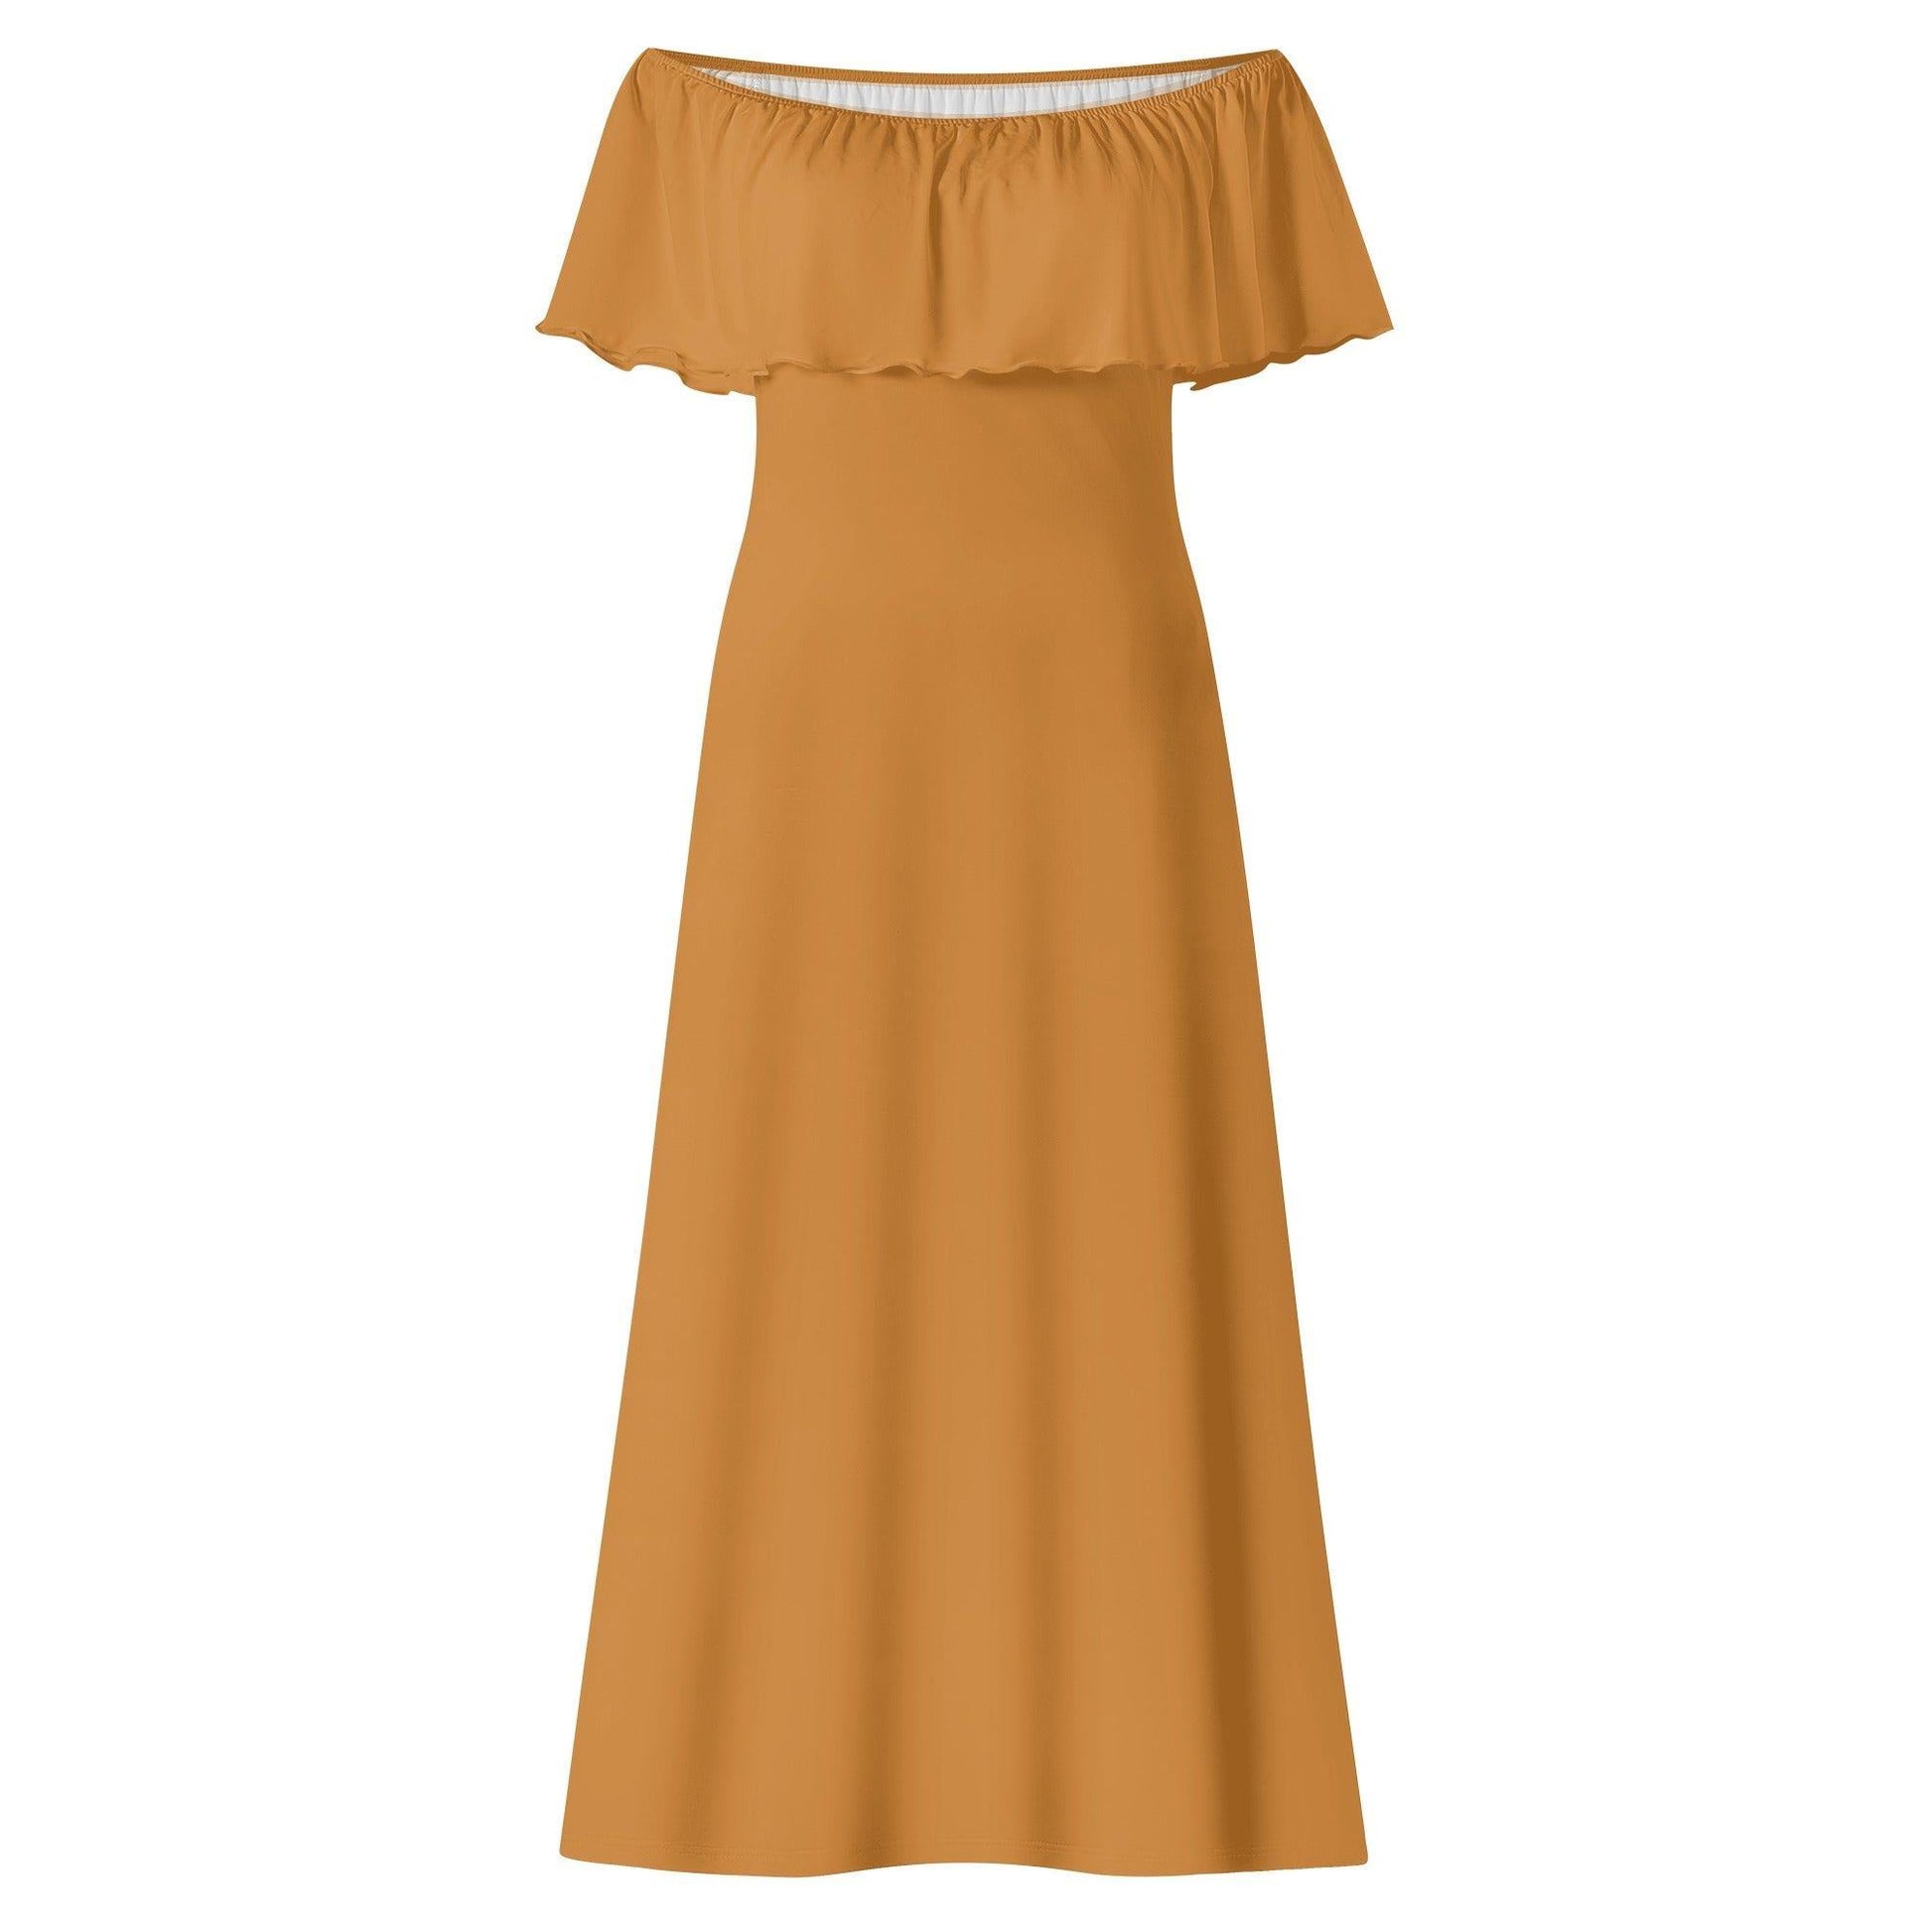 Langes schulterfreies bronze Kleid mit lockerem Oberteil Off-Shoulder-Kleid 73.99 Bronze, Kleid, Lang, locker, Oberteil, Schulterfrei JLR Design